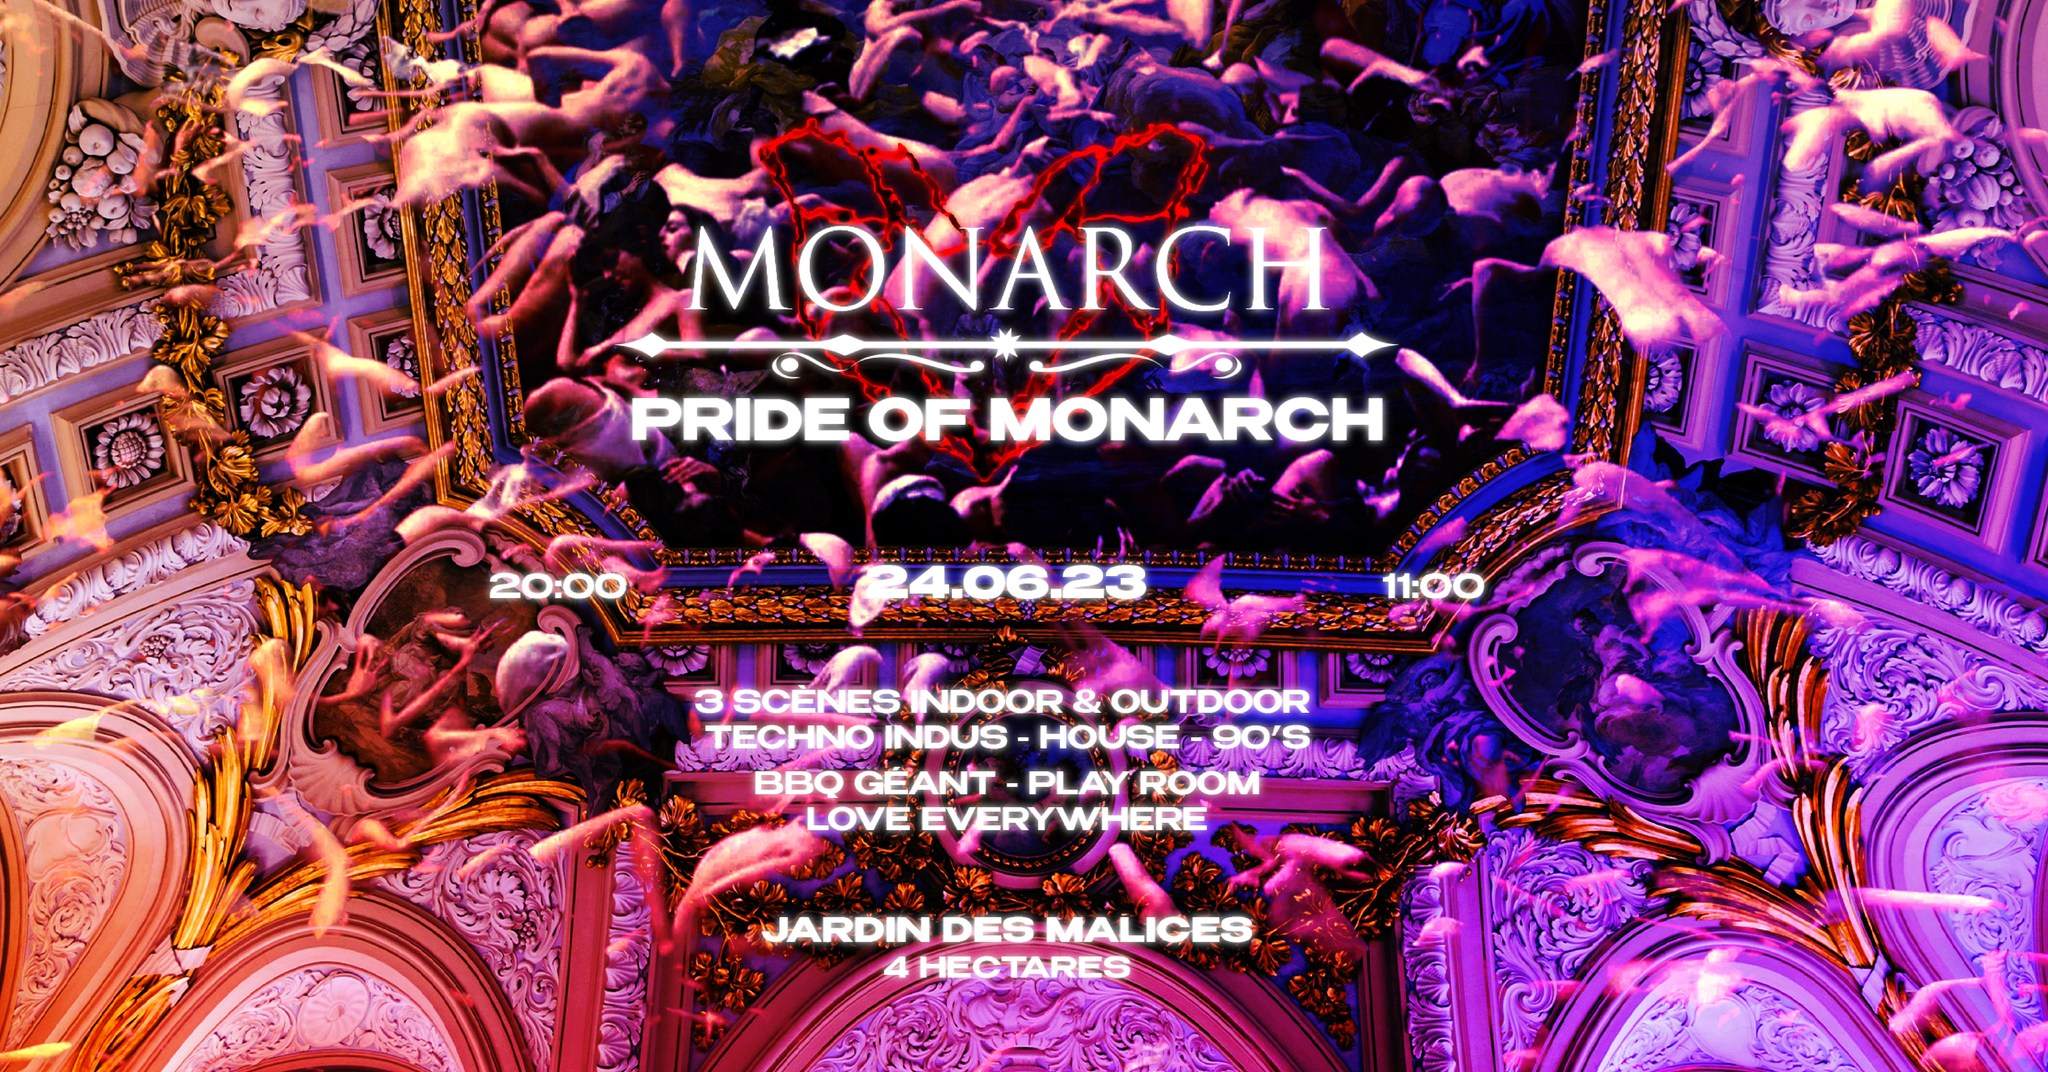 Pride of Monarch - Página frontal